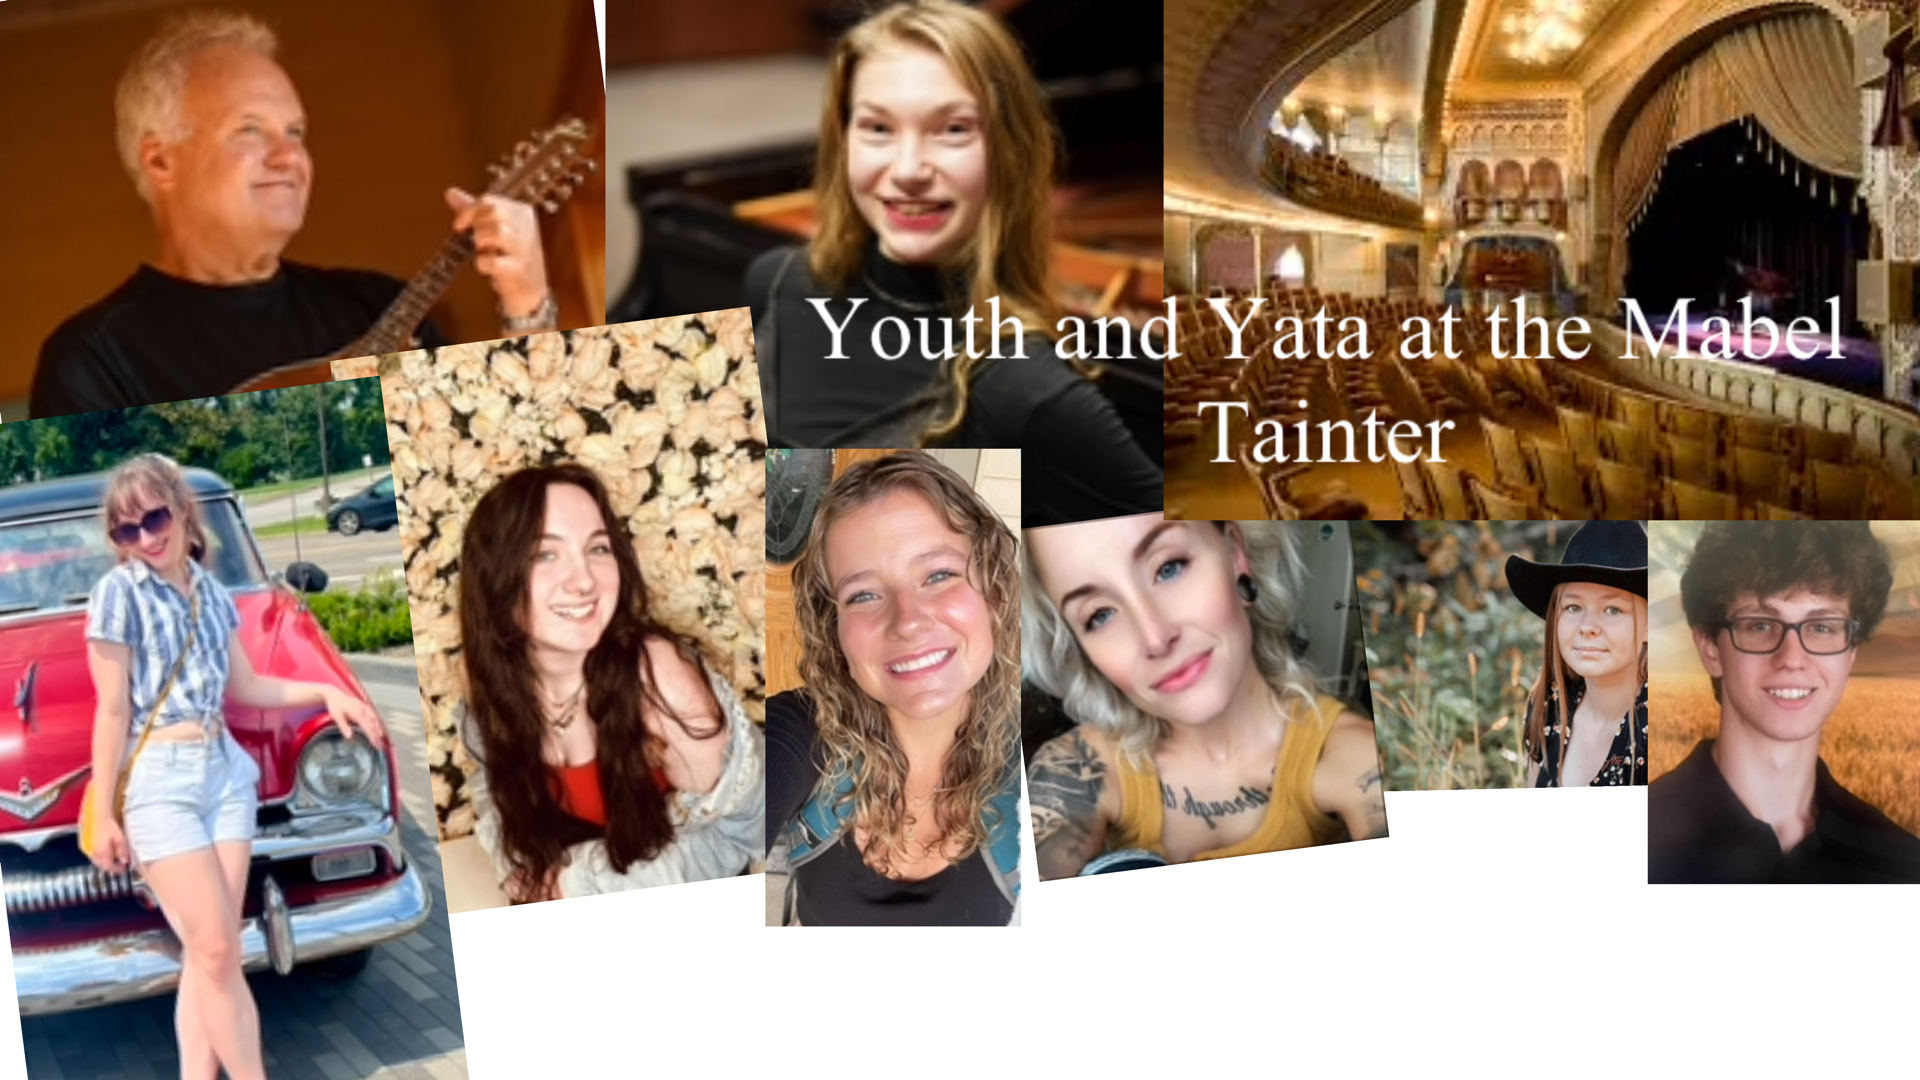 Yata and Youth, Menomonie, Wisconsin, United States